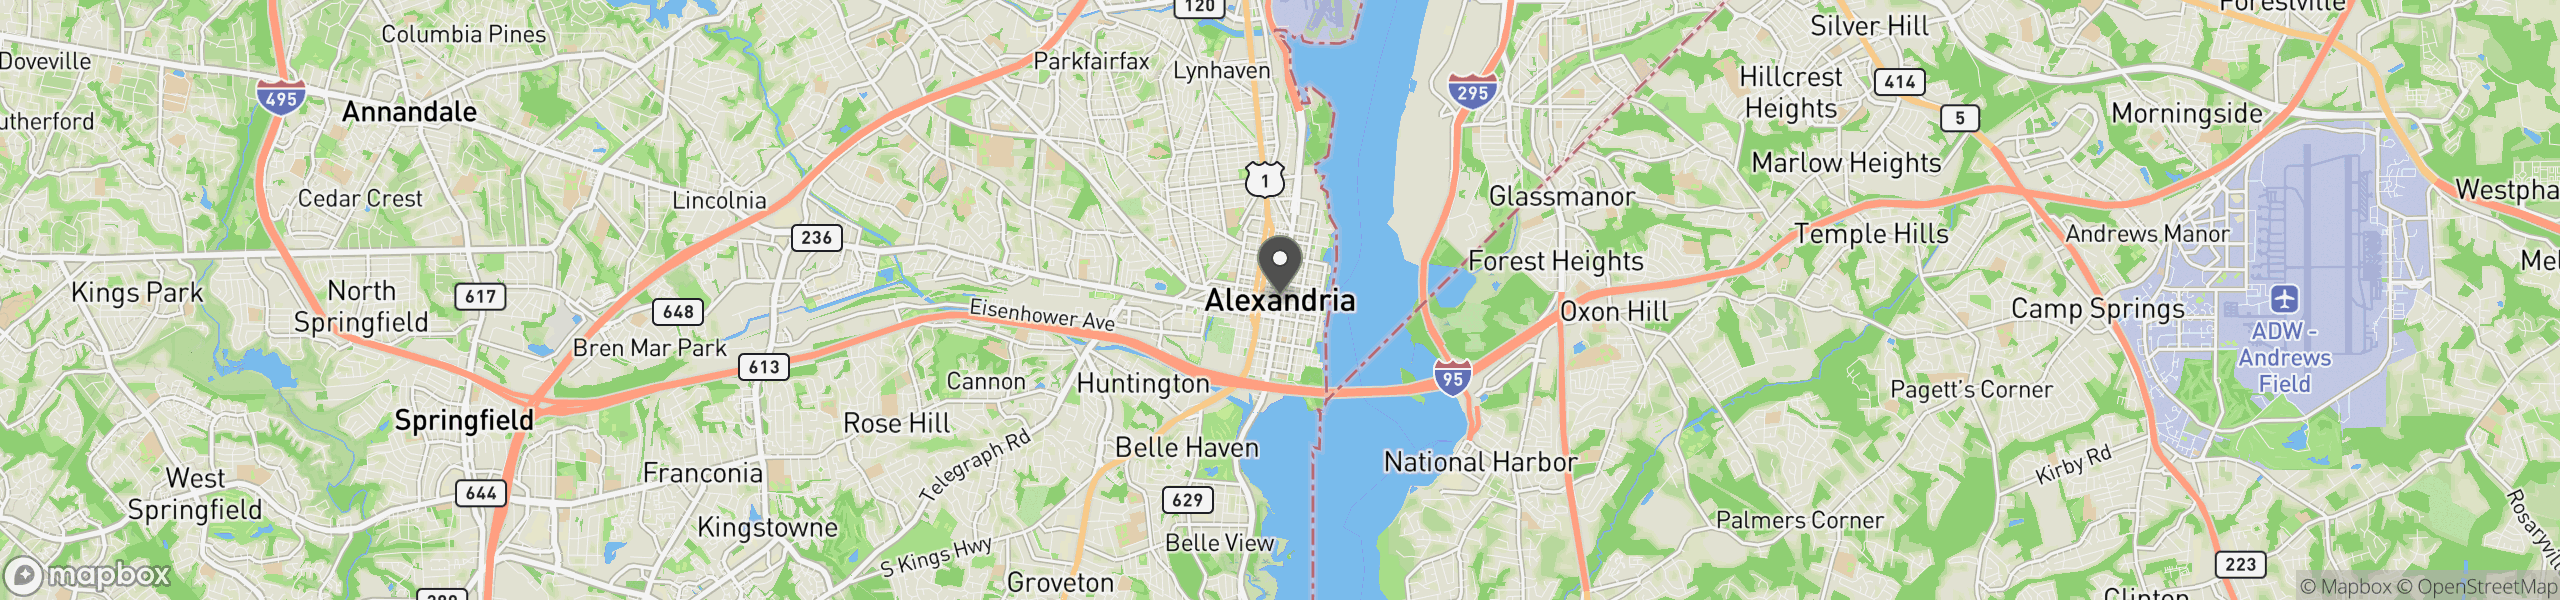 Alexandria, VA 22320